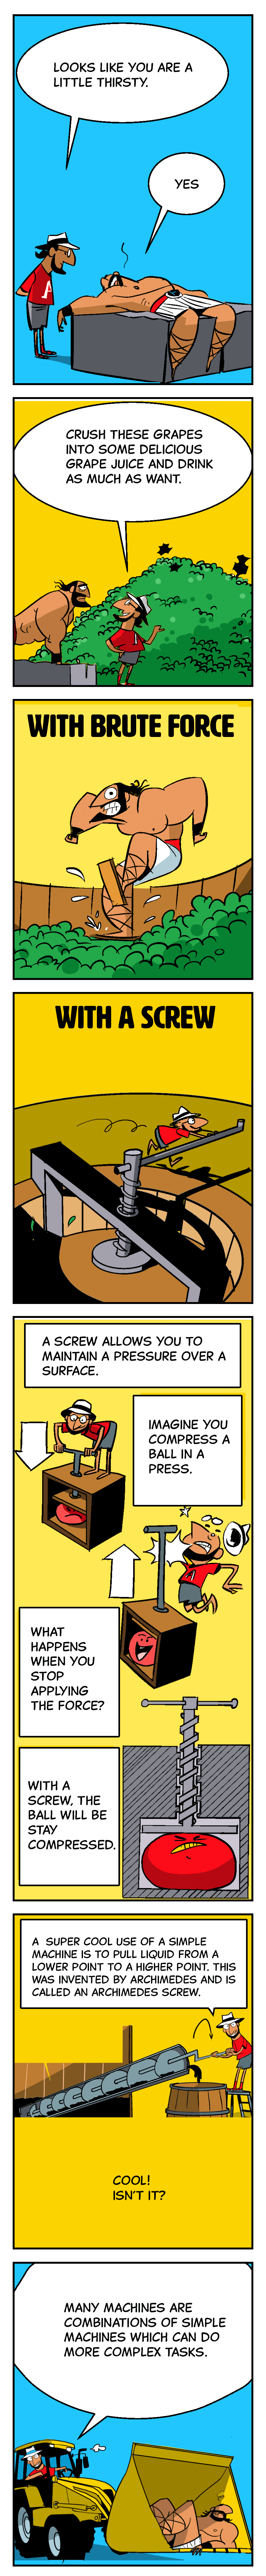 Simple Machines - Screw